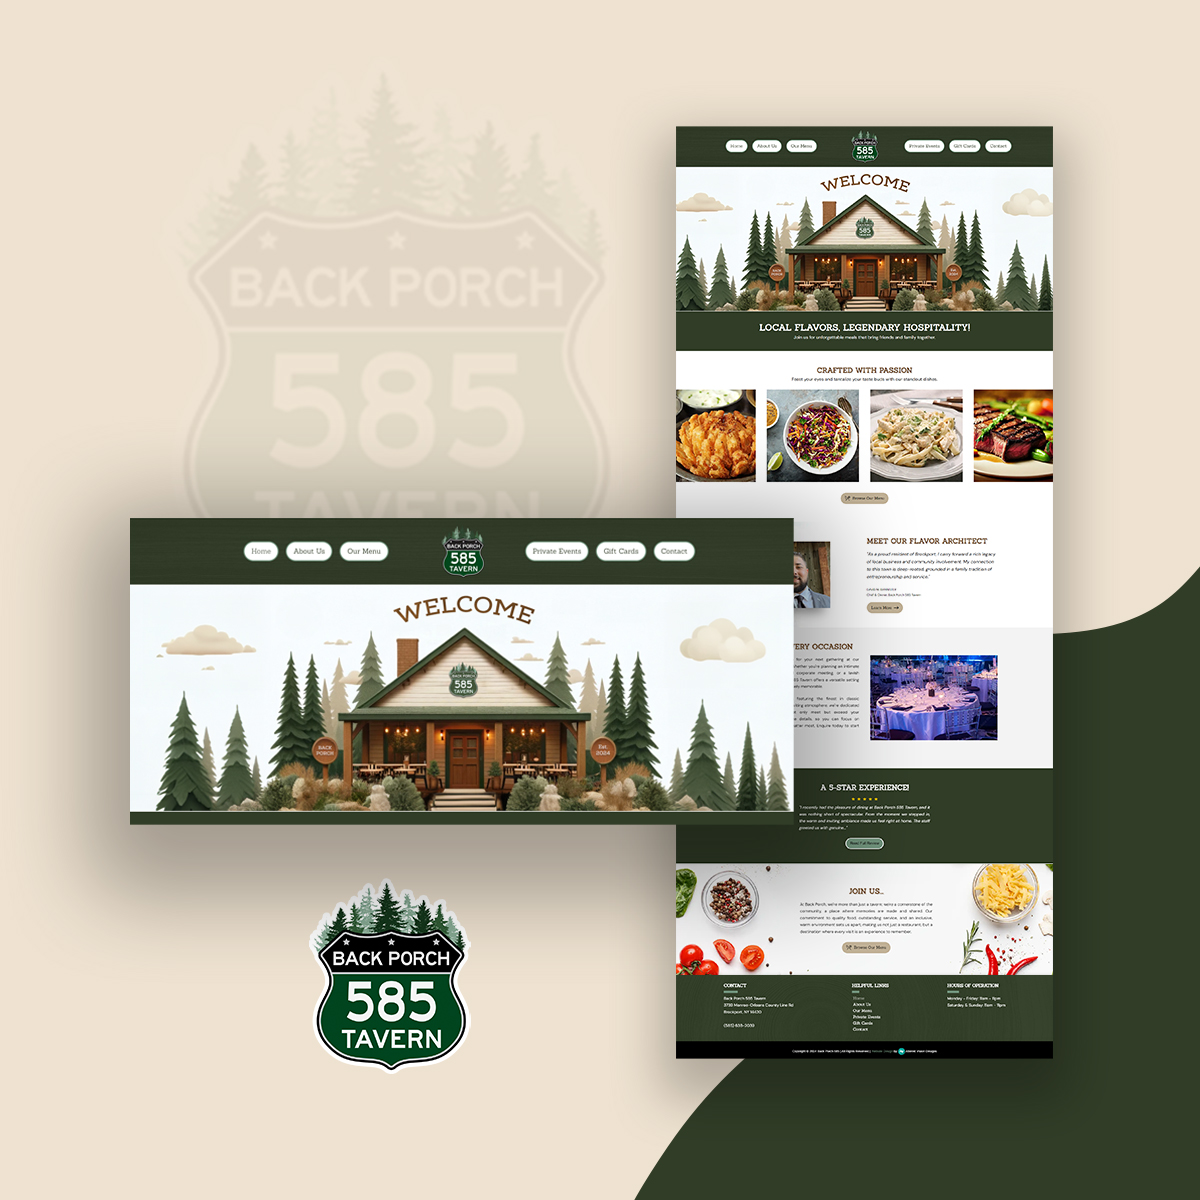 Back Porch 585 - New Website Design